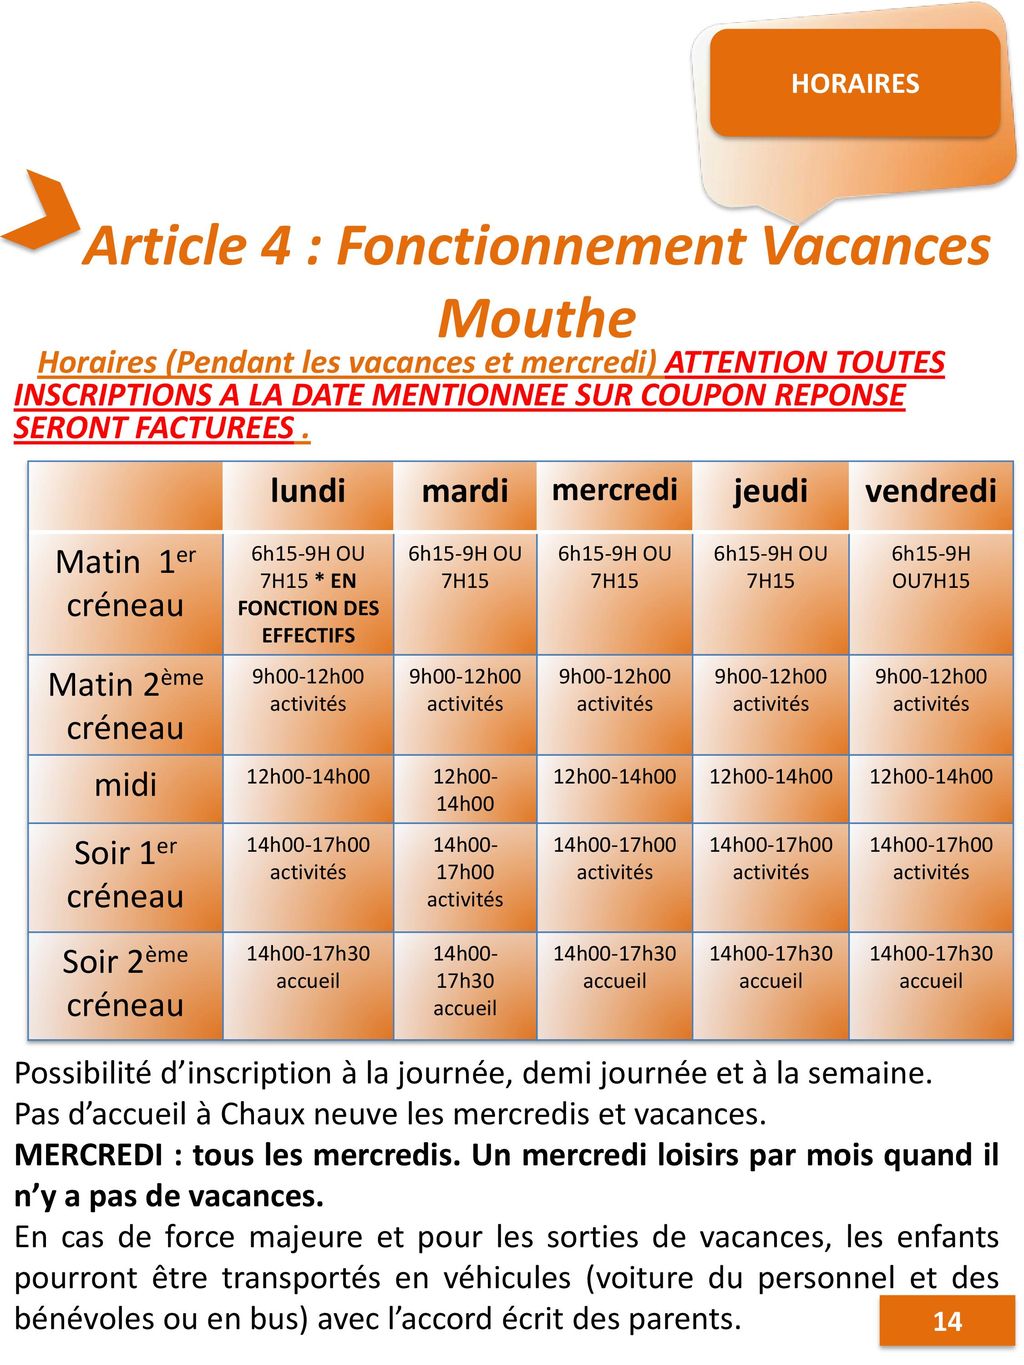 Article 4 : Fonctionnement Vacances Mouthe